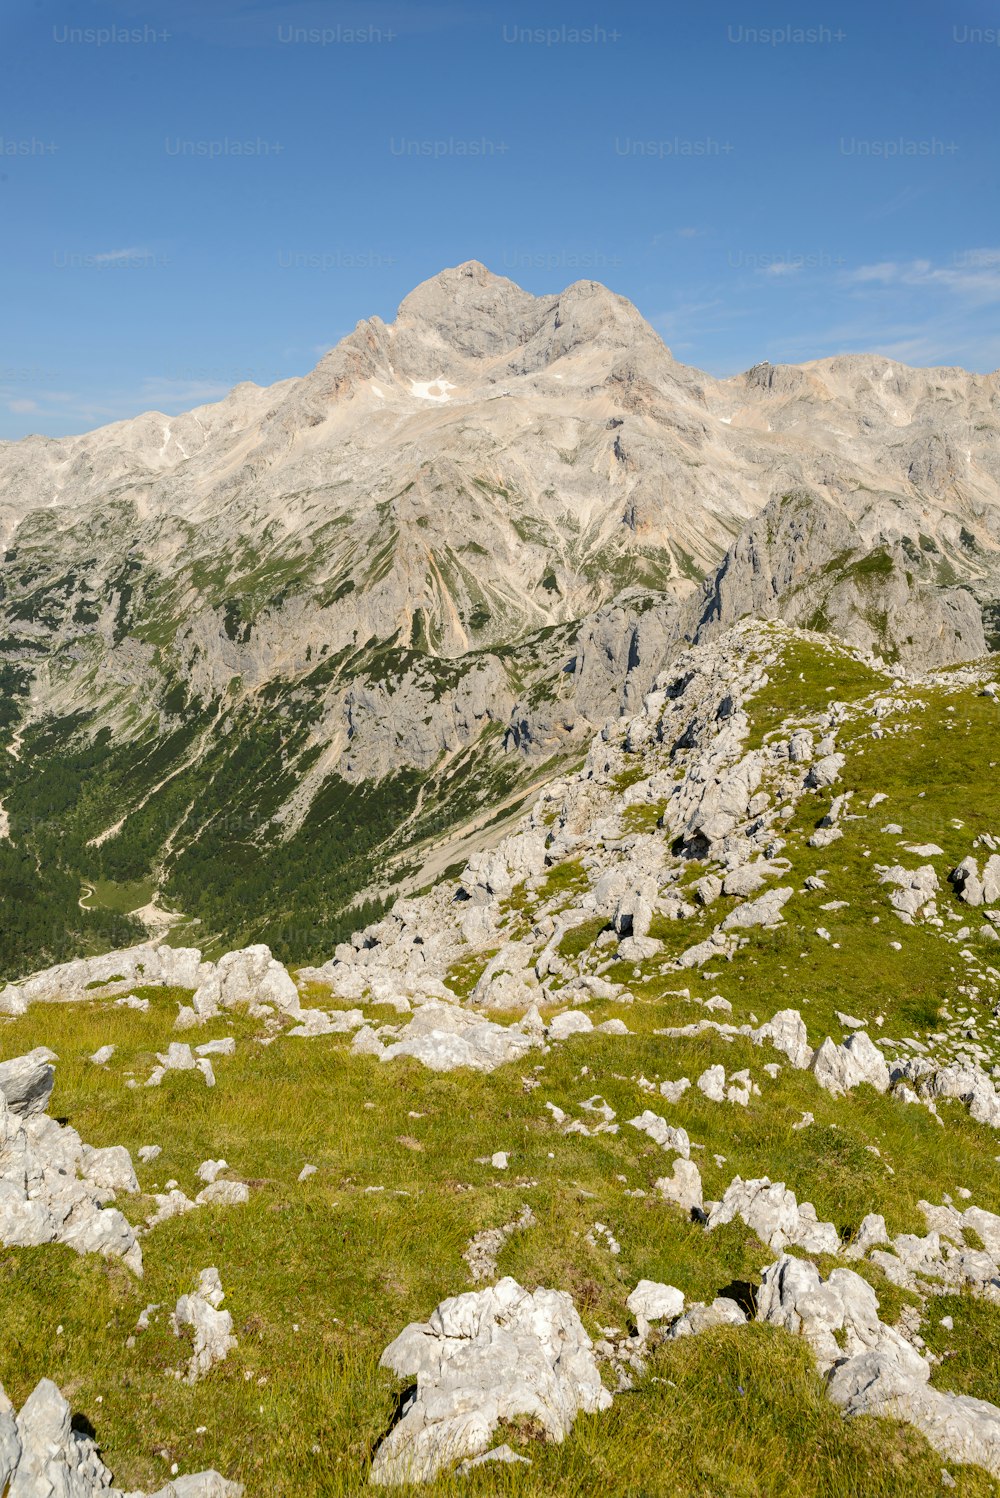 Ein felsiger Berg mit Gras und Felsen